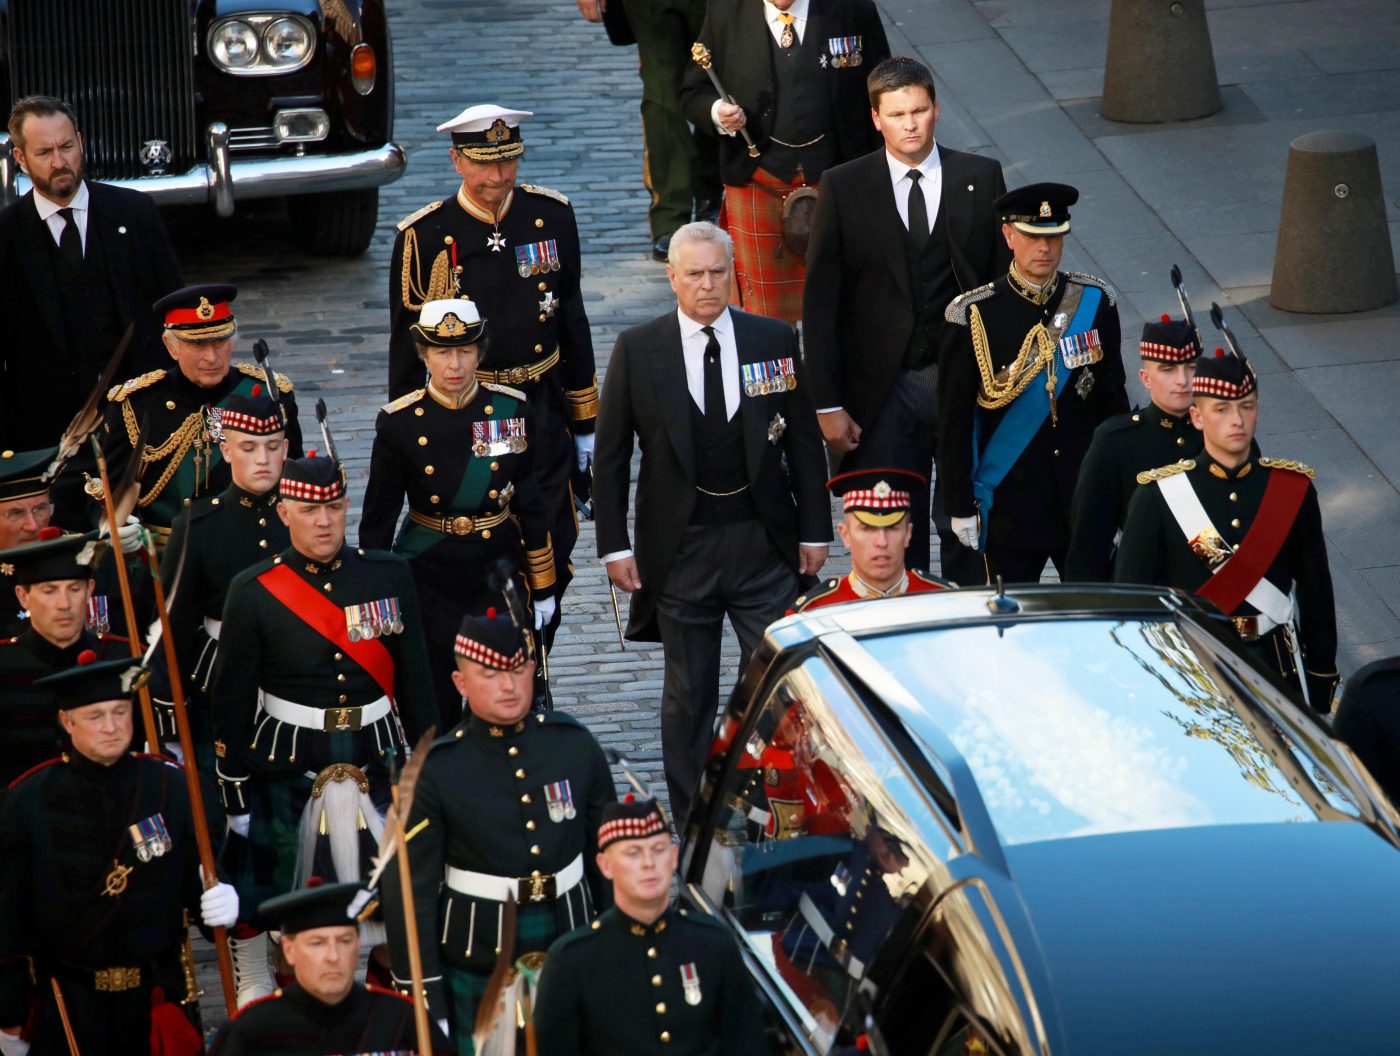 Funerali Regina Elisabetta, la diretta anche in Italia